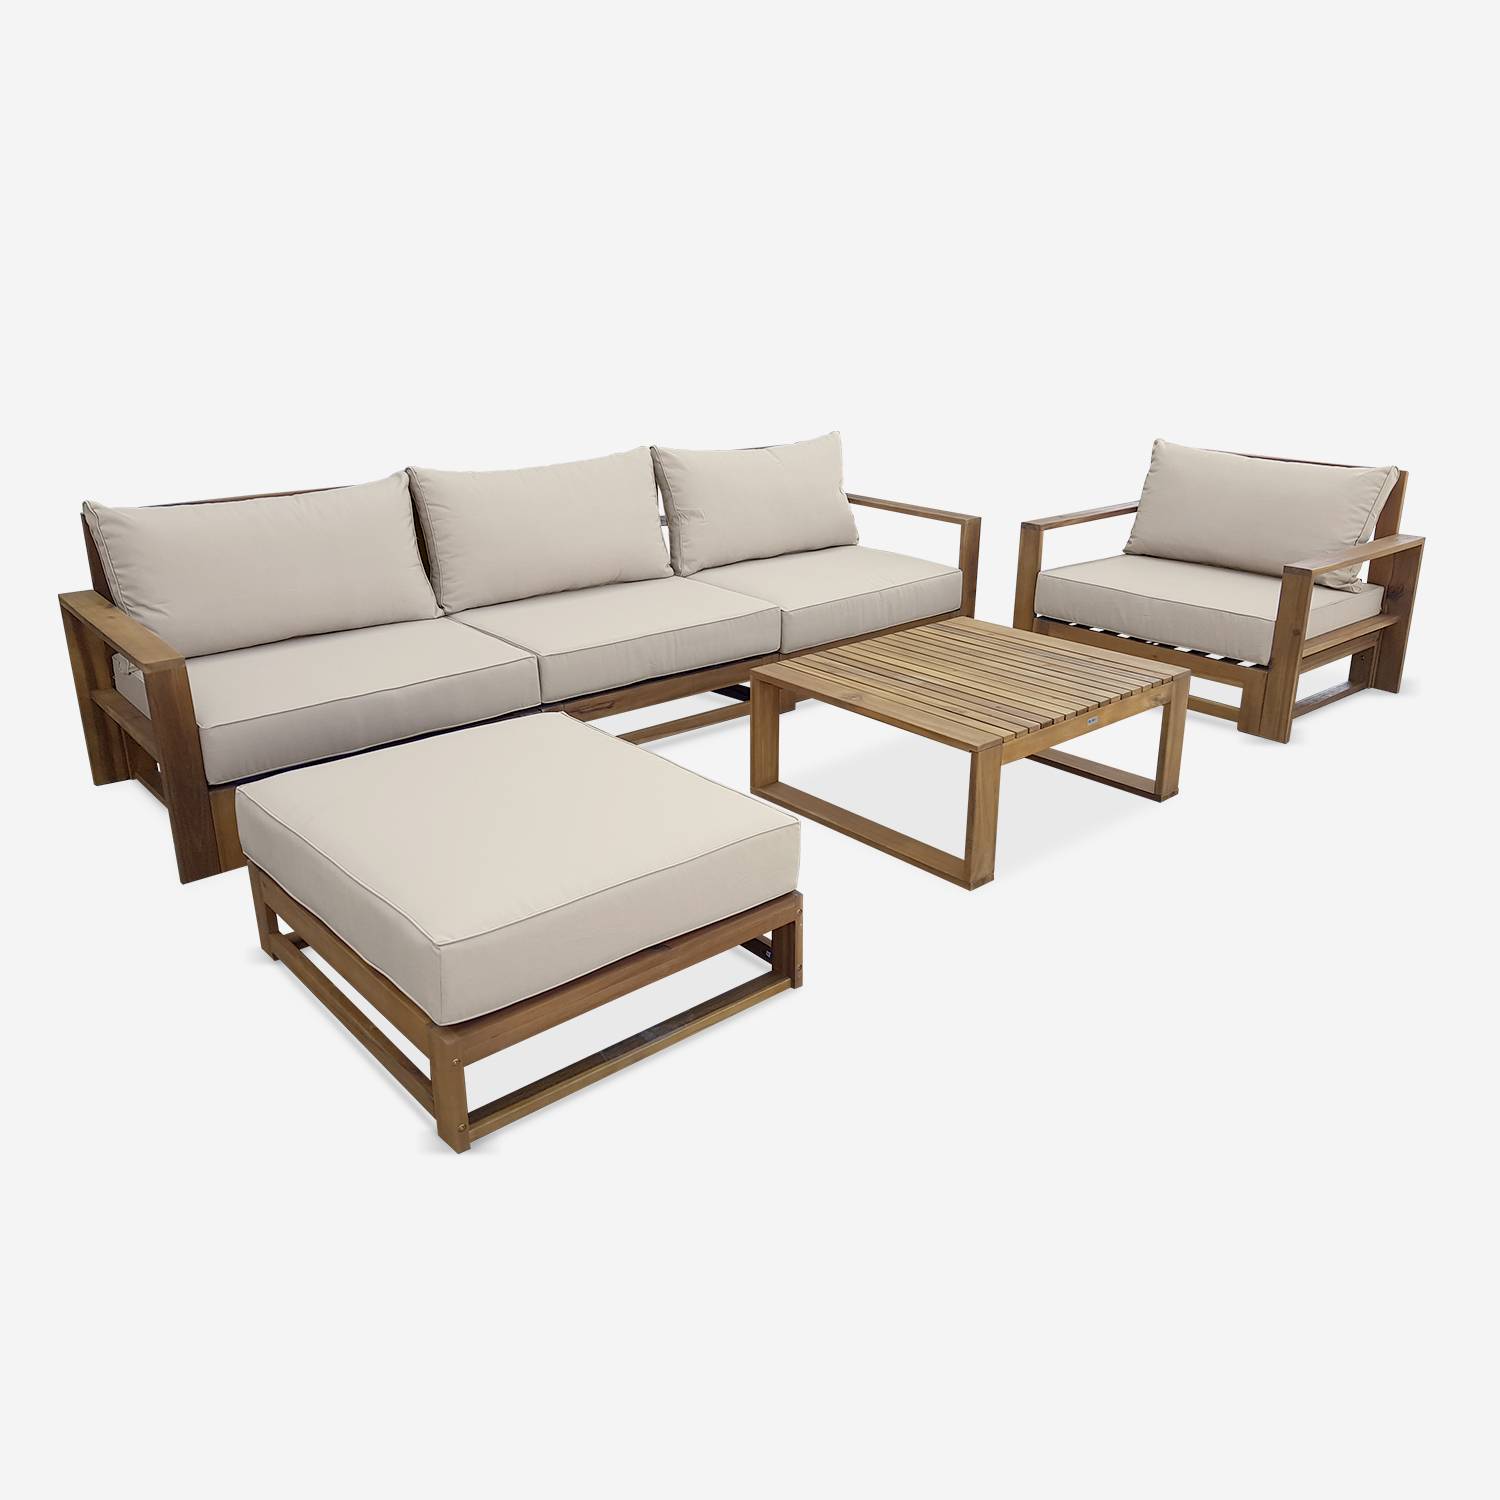 Gartengarnitur aus Holz 5 Sitze - Mendoza - beigefarbene Kissen, Sofa, Sessel und Couchtisch aus Akazie, 6 zusammenstellbare Teile, Design Photo3